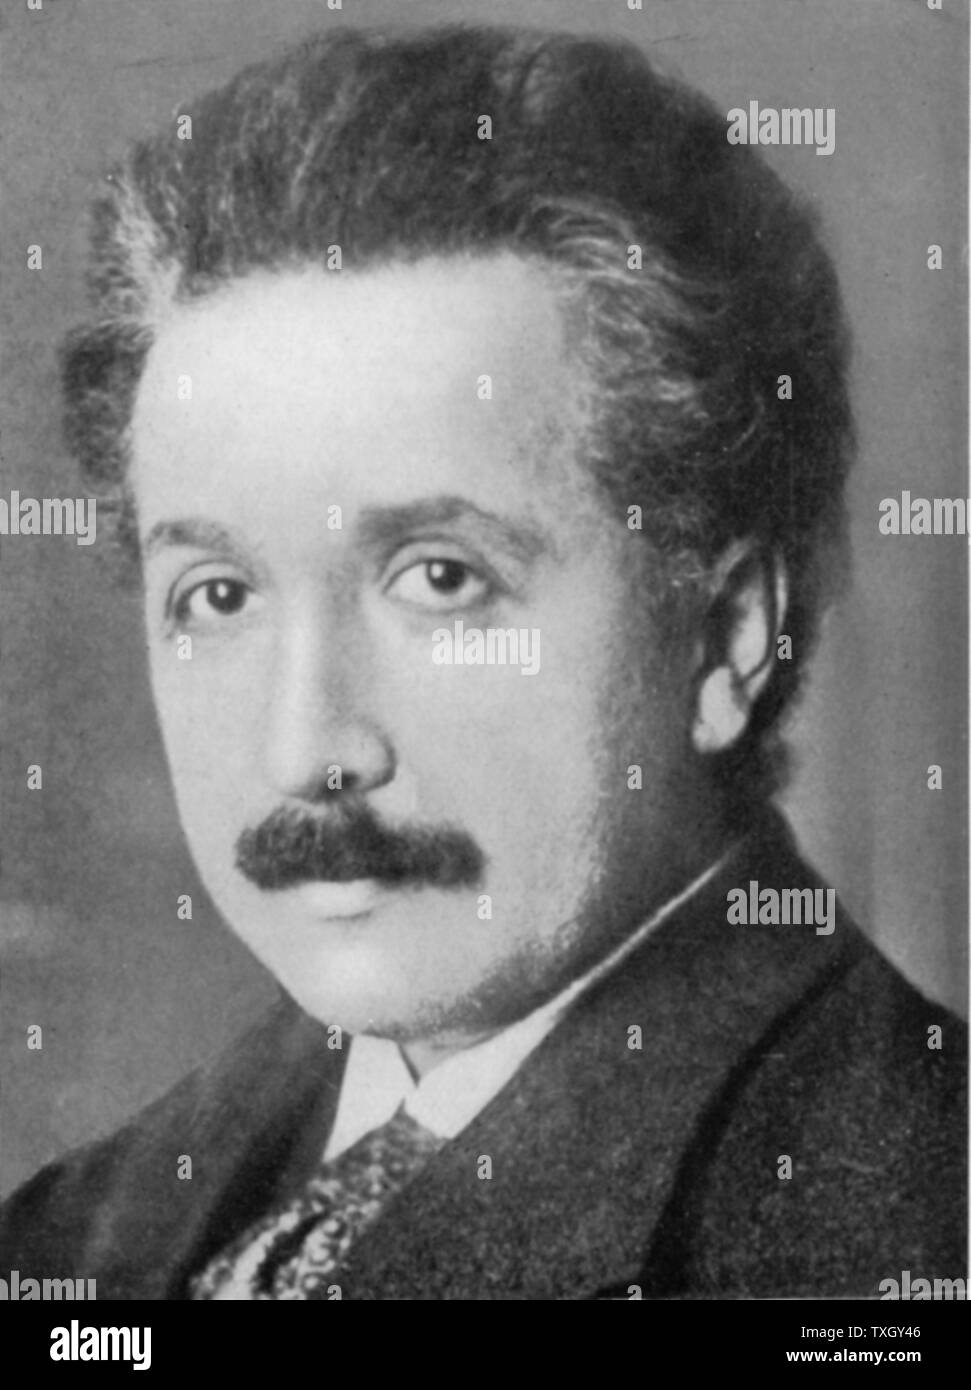 Albert Einstein (1879-1955) deutsch-schweizerische Mathematiker, Relativitätstheorie Einsteins c 1920 Stockfoto